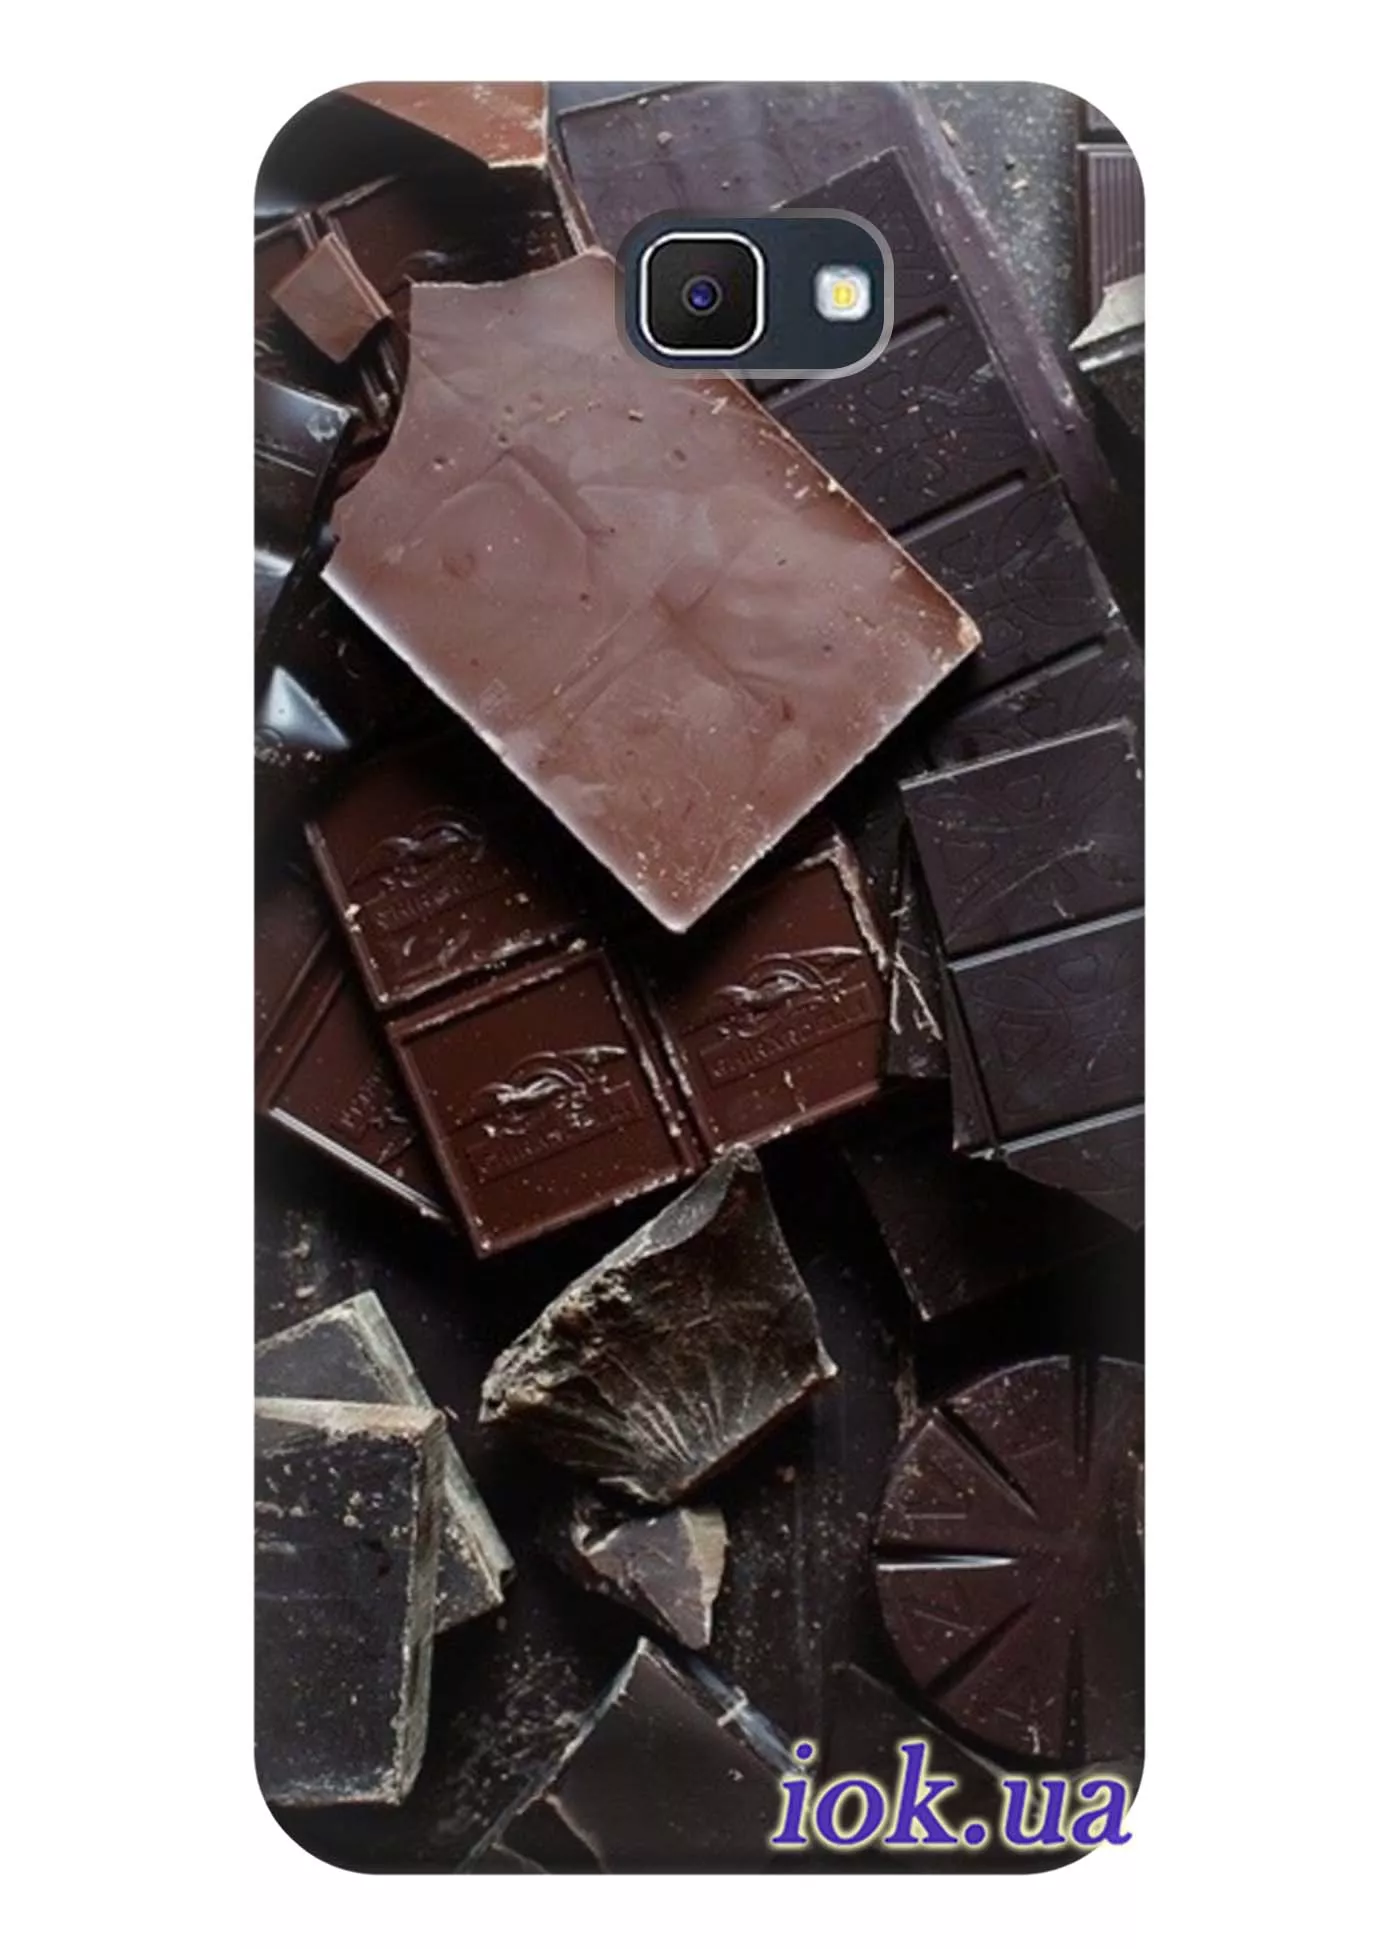 Чехол для Galaxy J5 Prime - Шоколадный принт